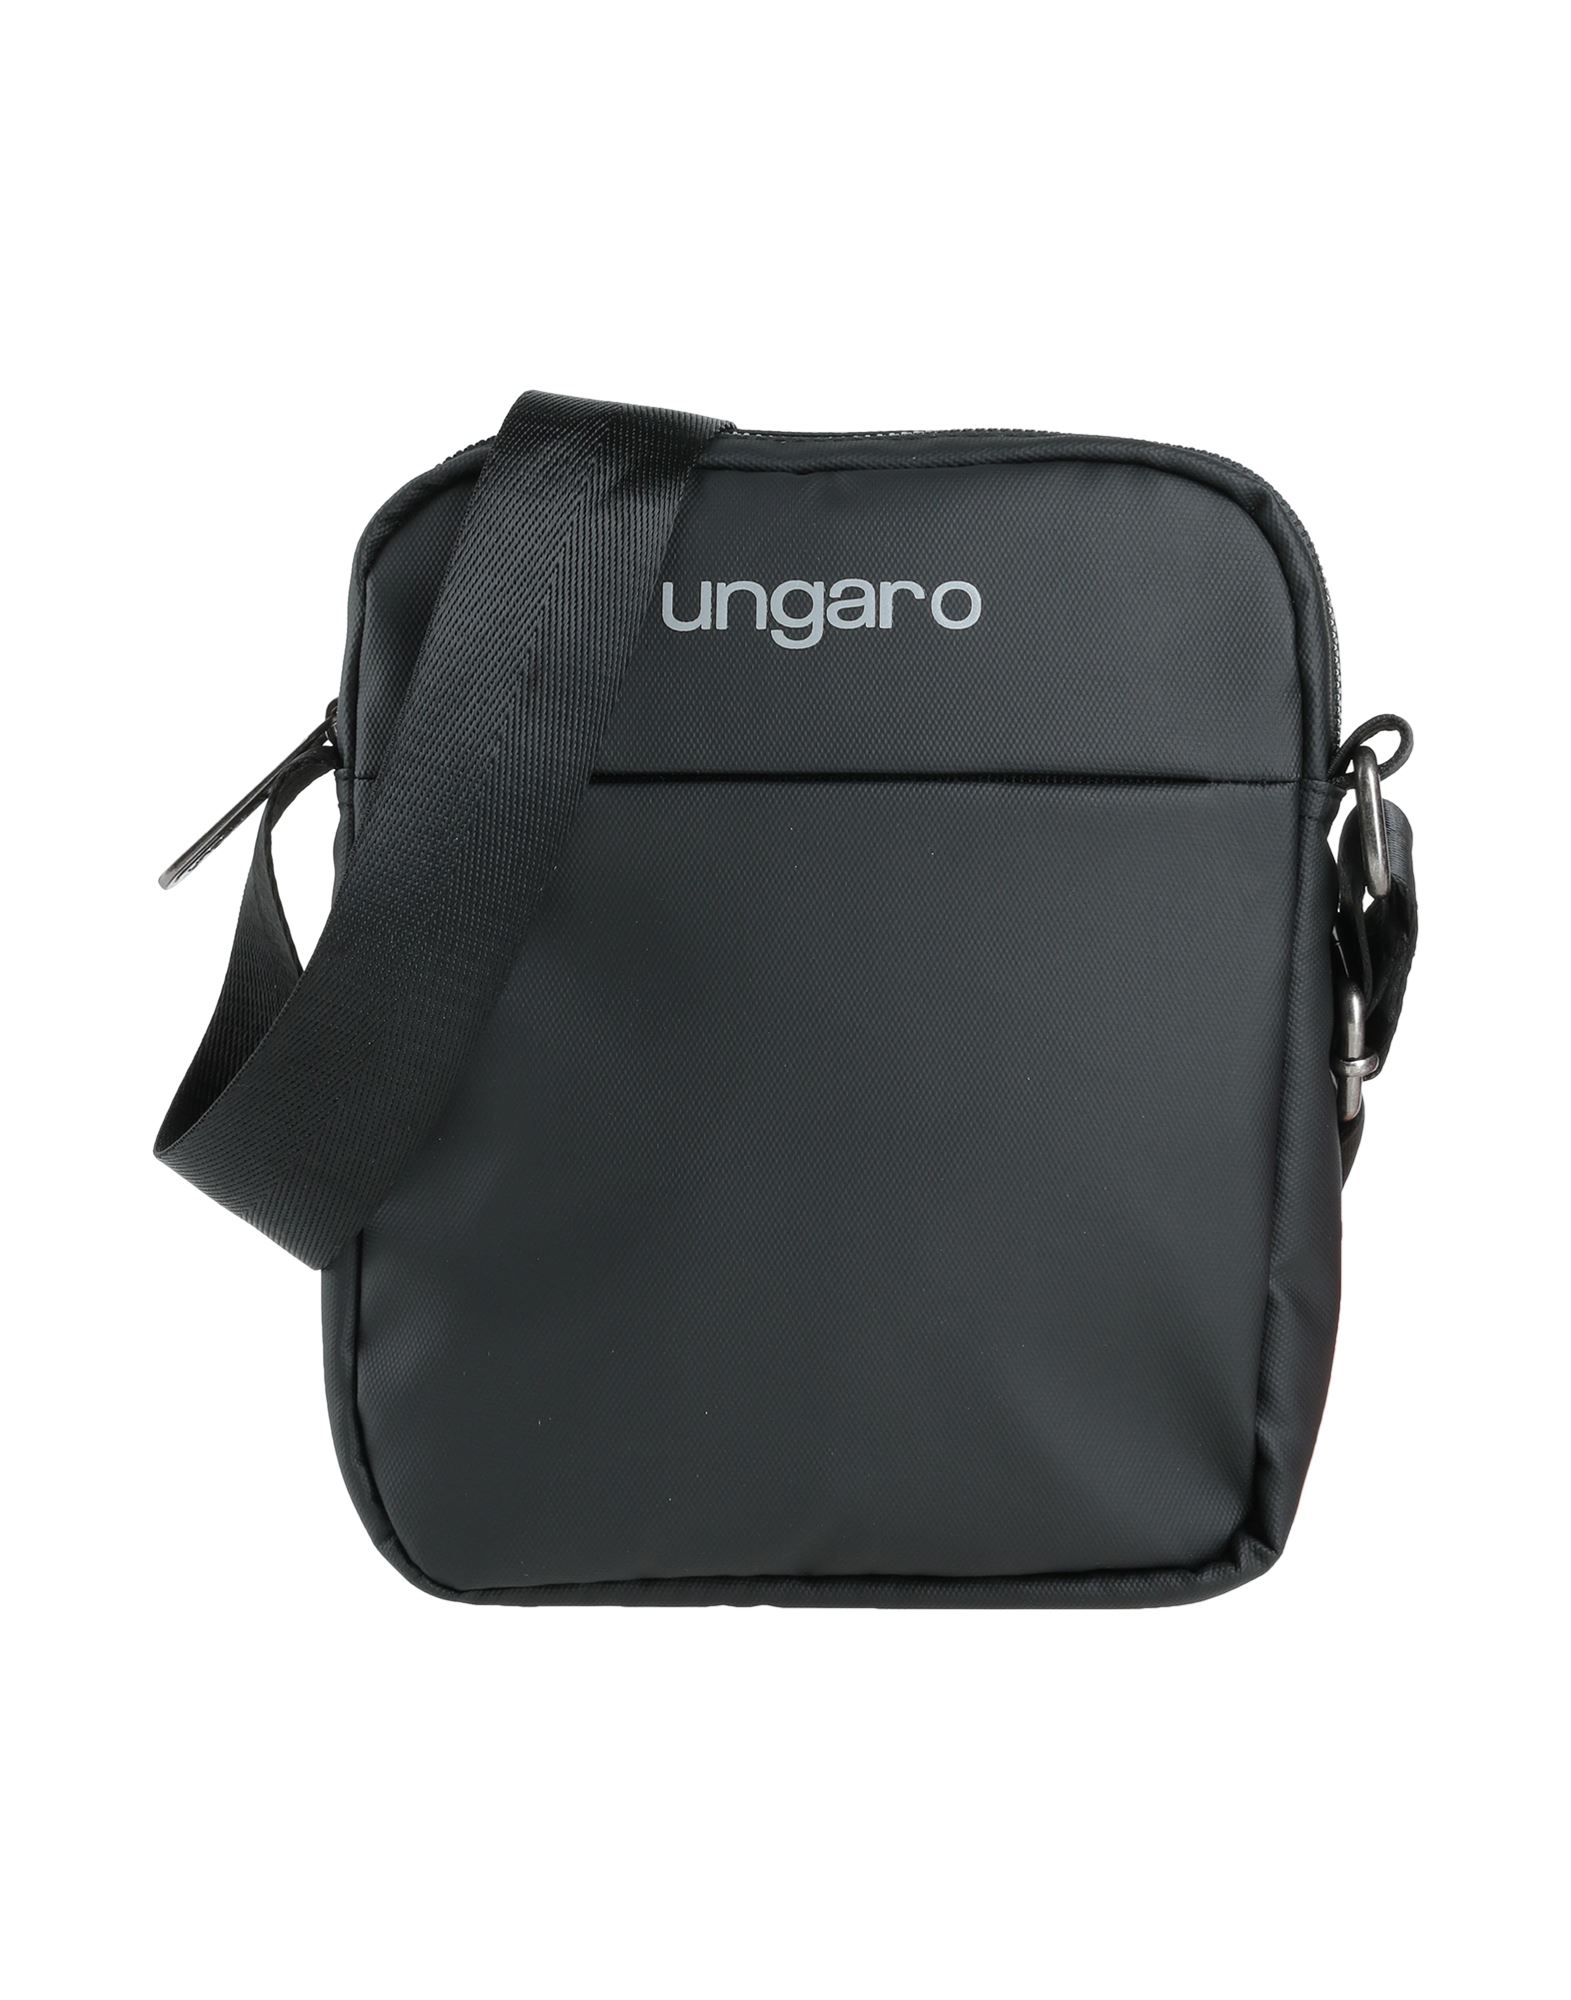 Ungaro Handbags In Black